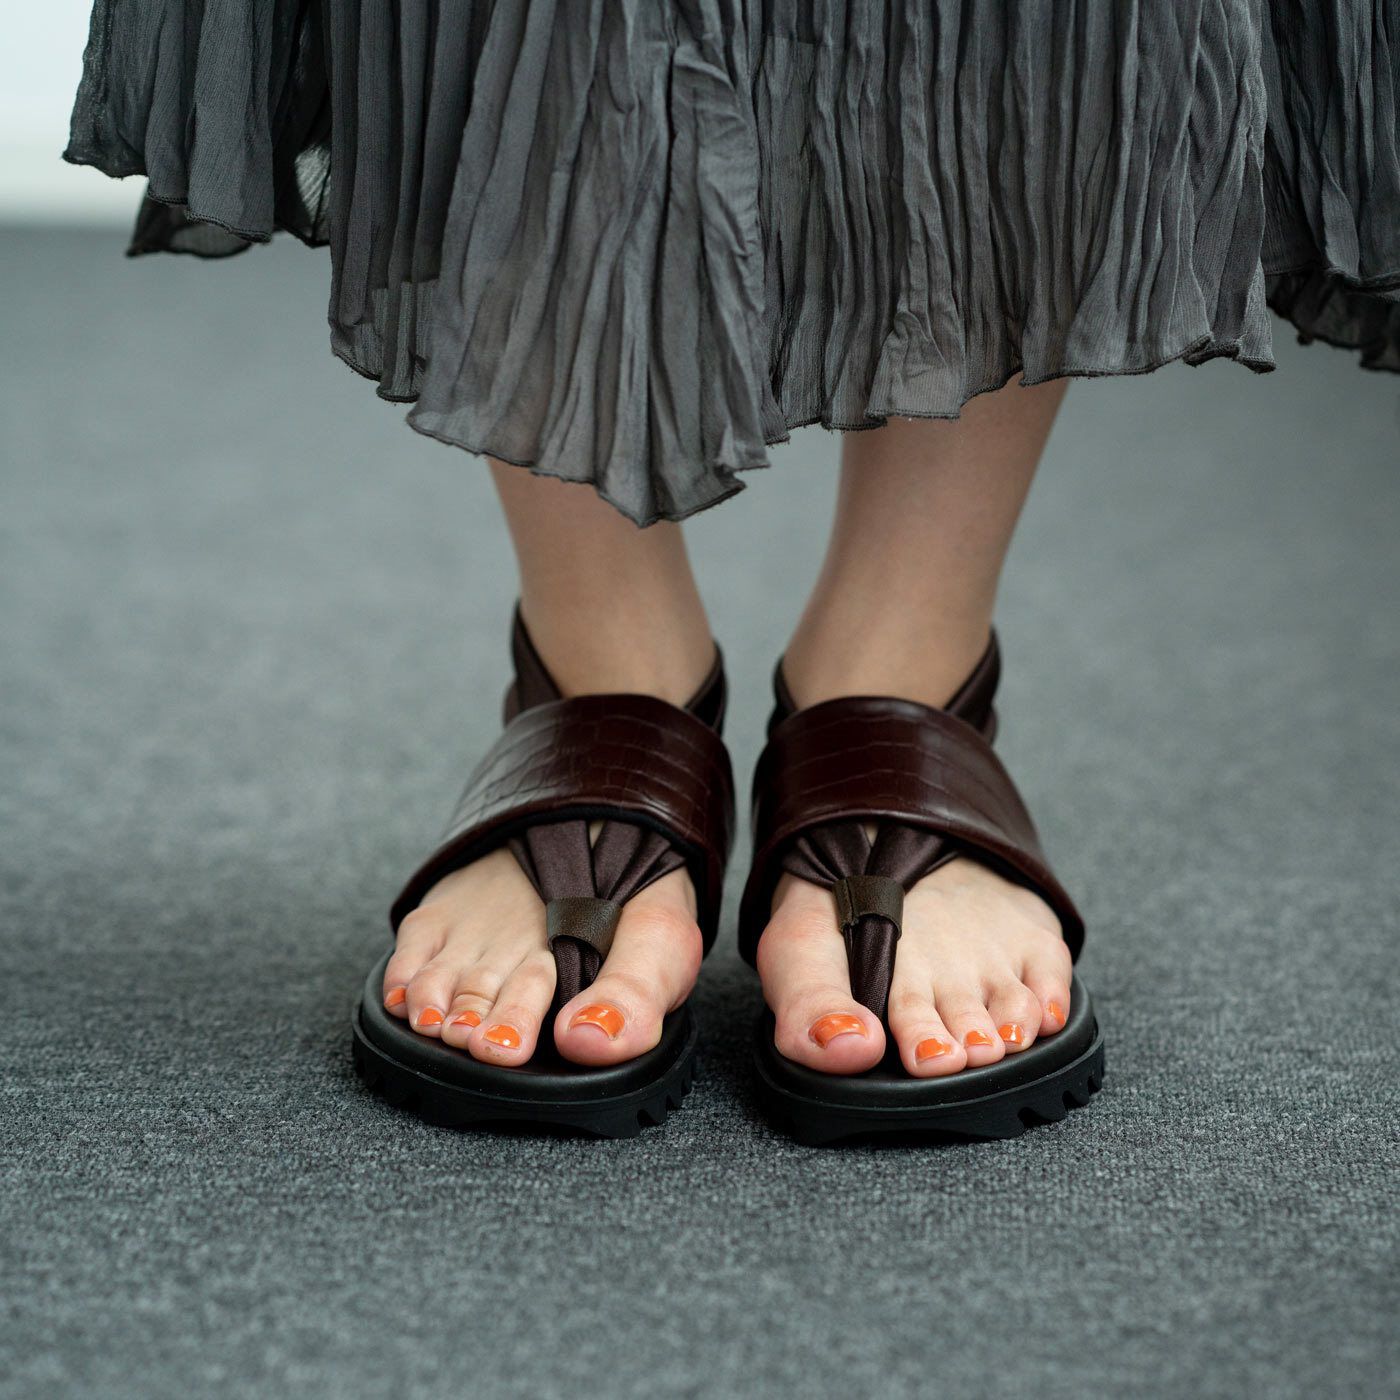 ＆Stories|靴デザイナーの理想で仕上げた 職人本革のトングシューズ〈クロコ型押し柄・ブラウン〉|神戸・長田で40年以上も靴づくりを続けてきた工房と作ったトングシューズ。新作はクロコ型押し柄のブラウン。